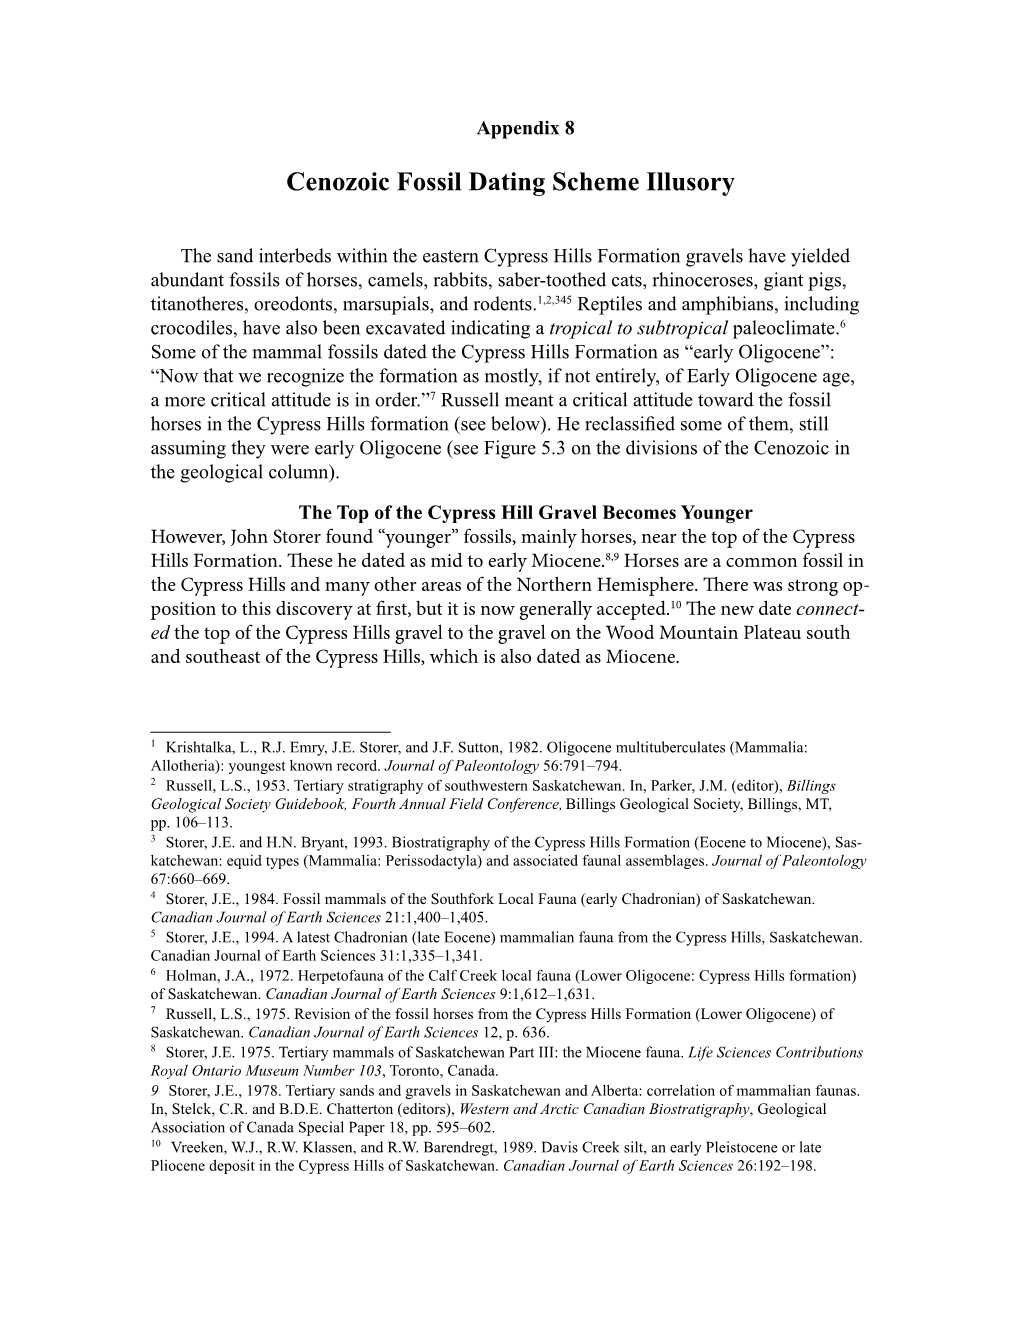 Appendix 8. Cenozoic Fossil Dating Scheme Illusory